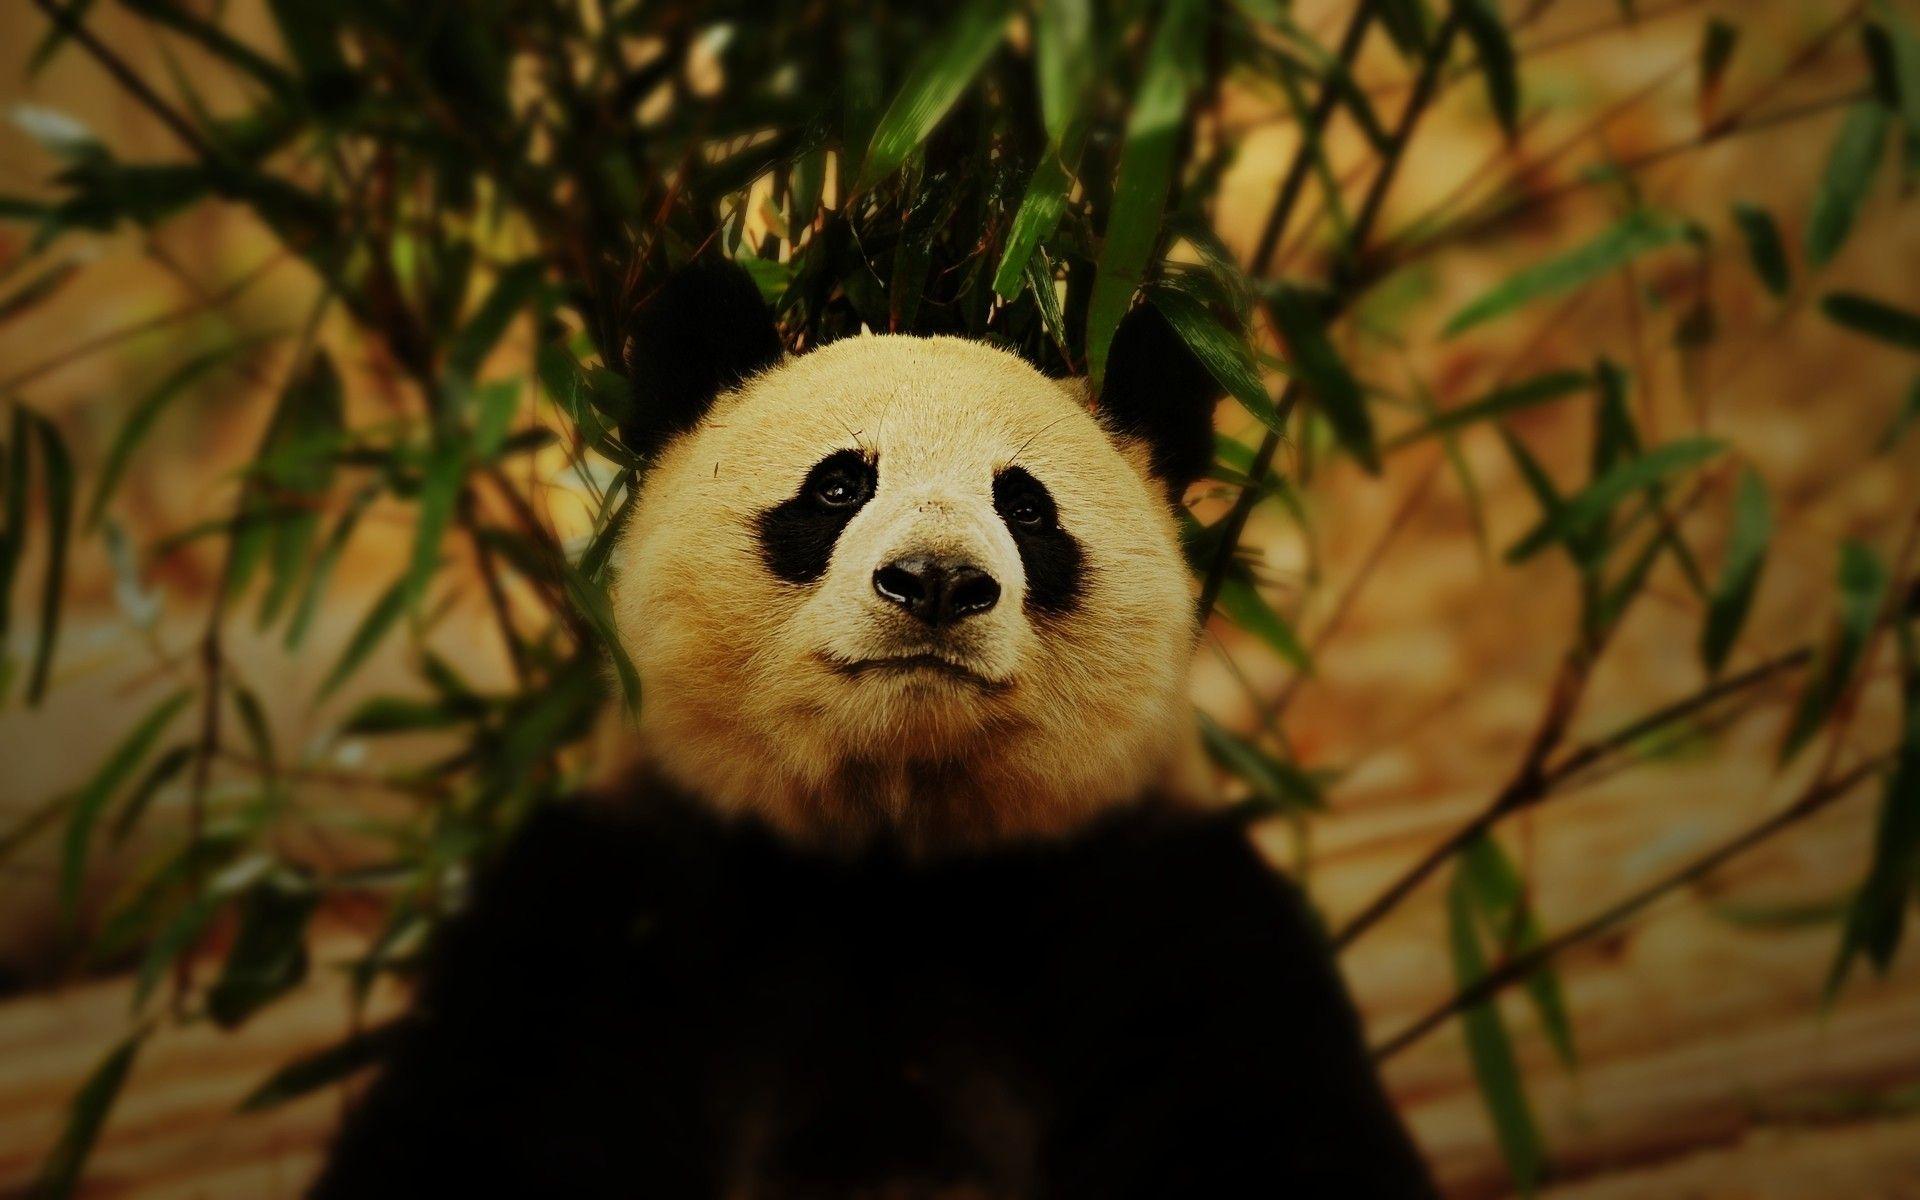 Bamboo panda bears wallpaper. PC